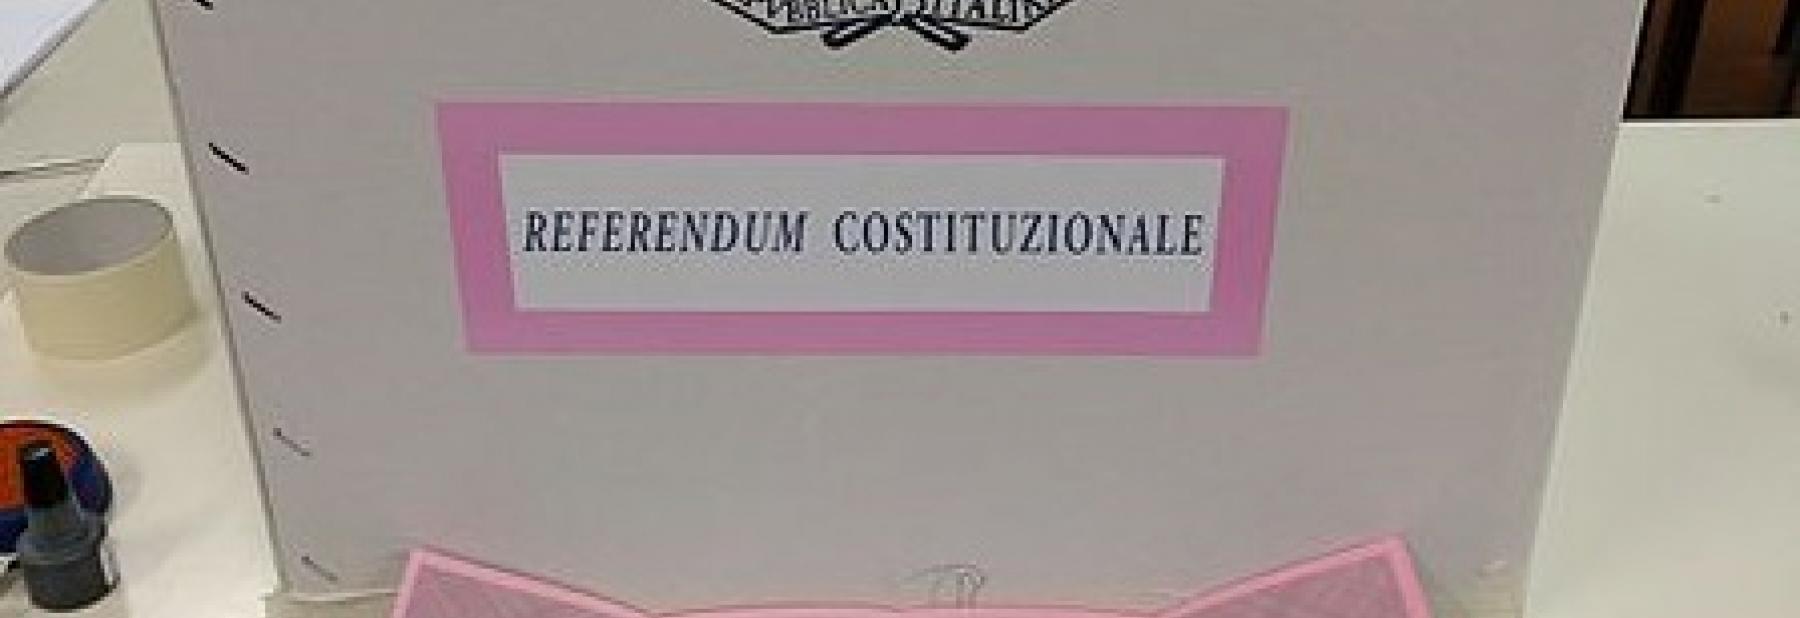 referendum_costituzionale